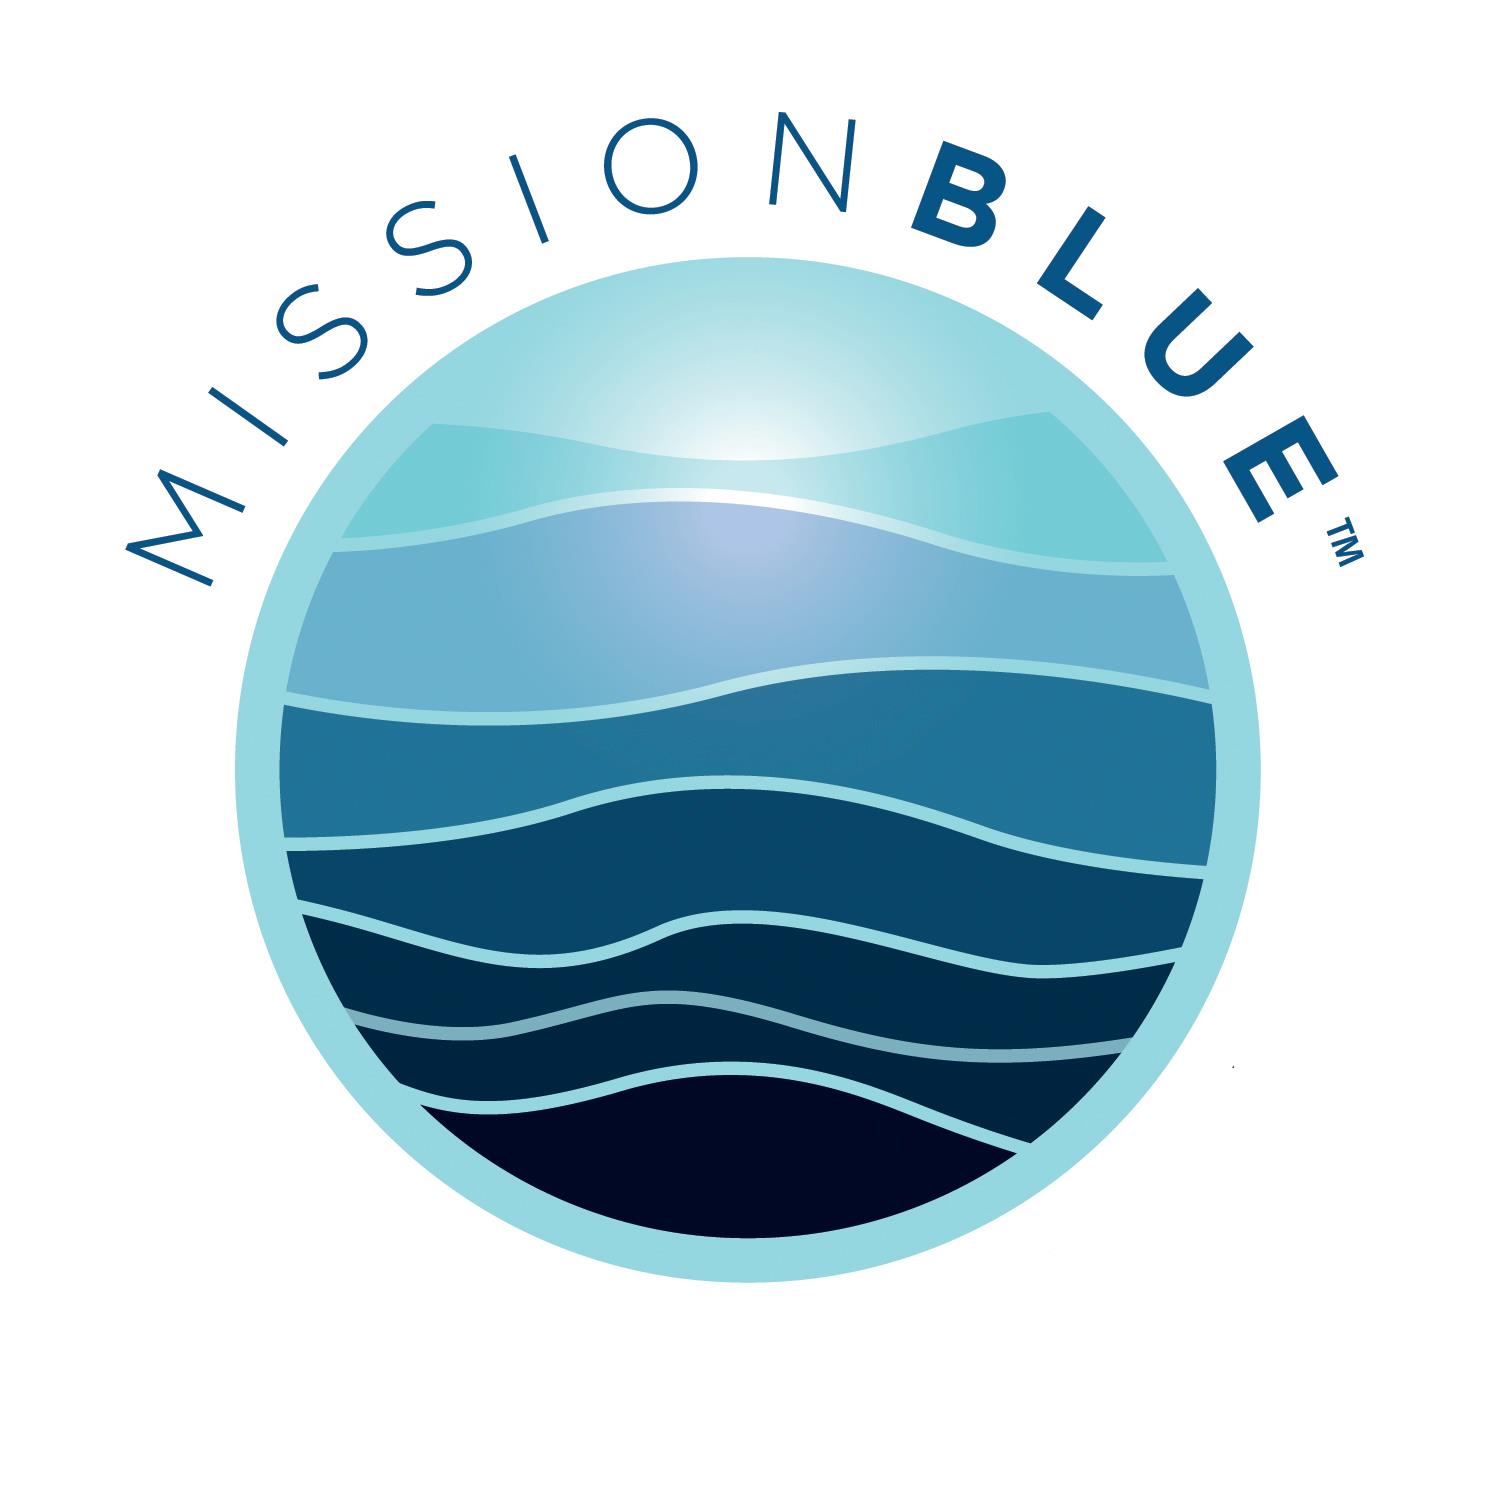 mission blue logo